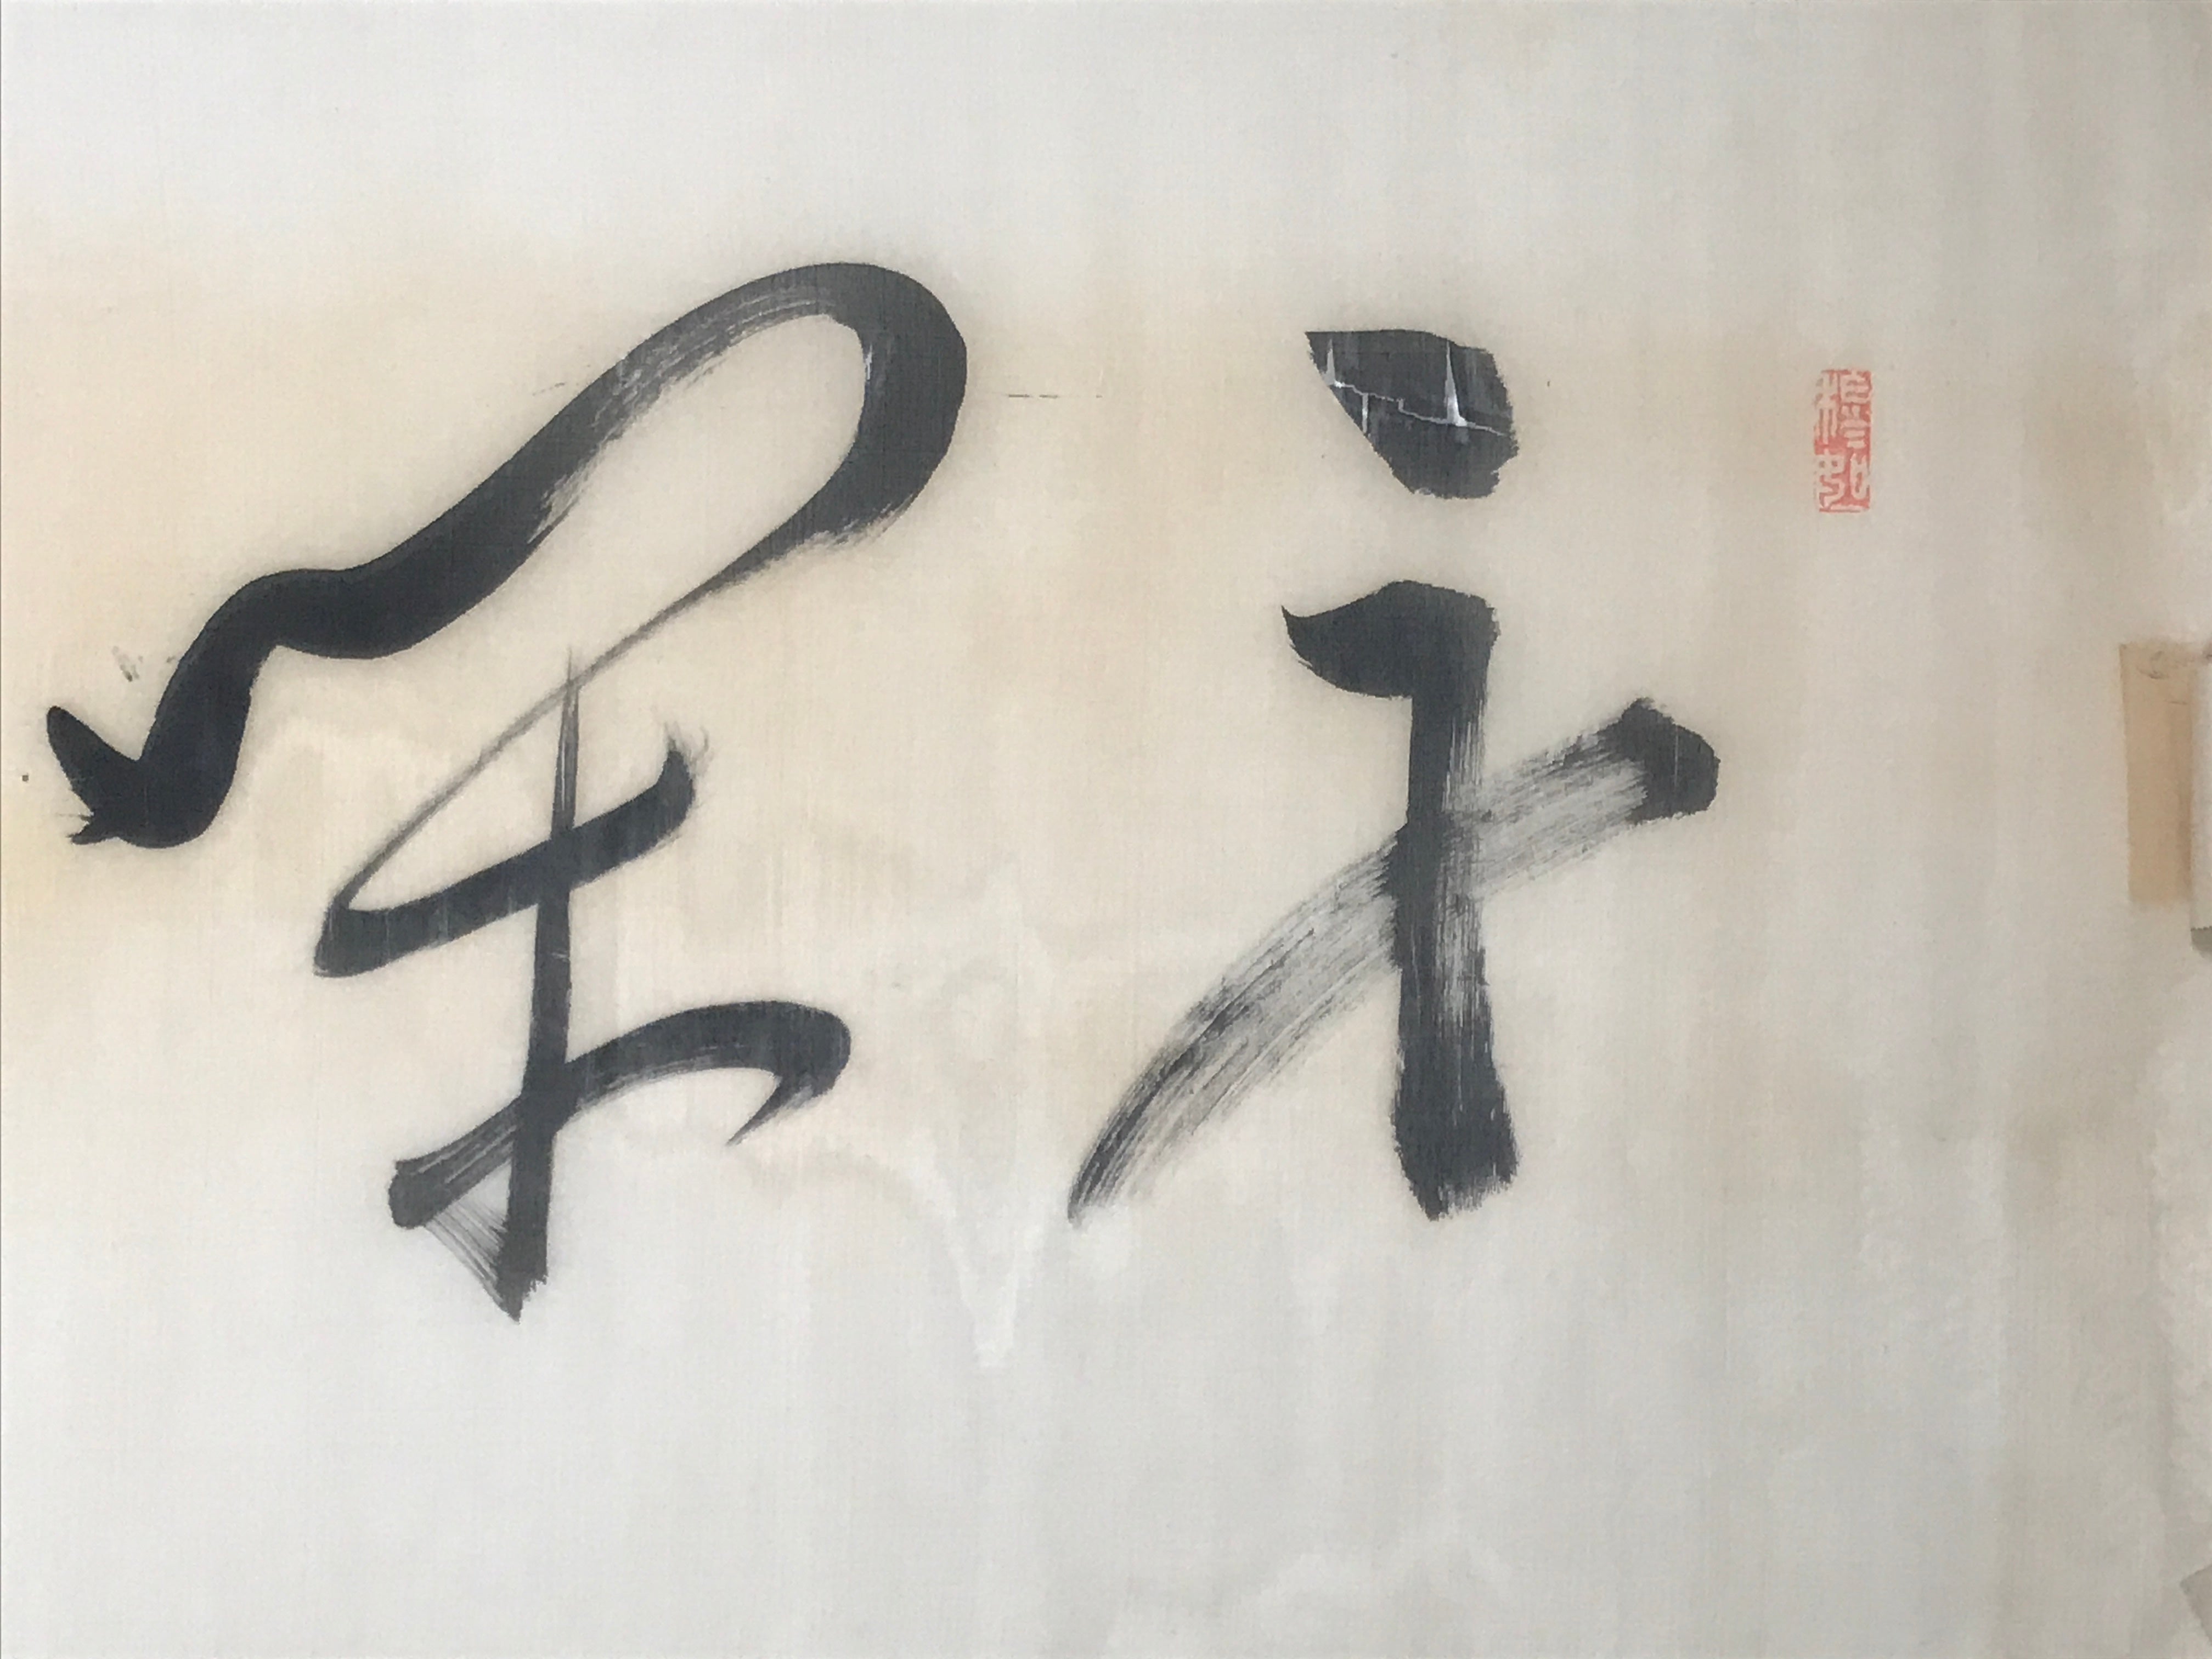 Japanese Horizontal Picture Hanging Scroll Vtg Yume Calligraphy Kakejiku SC990